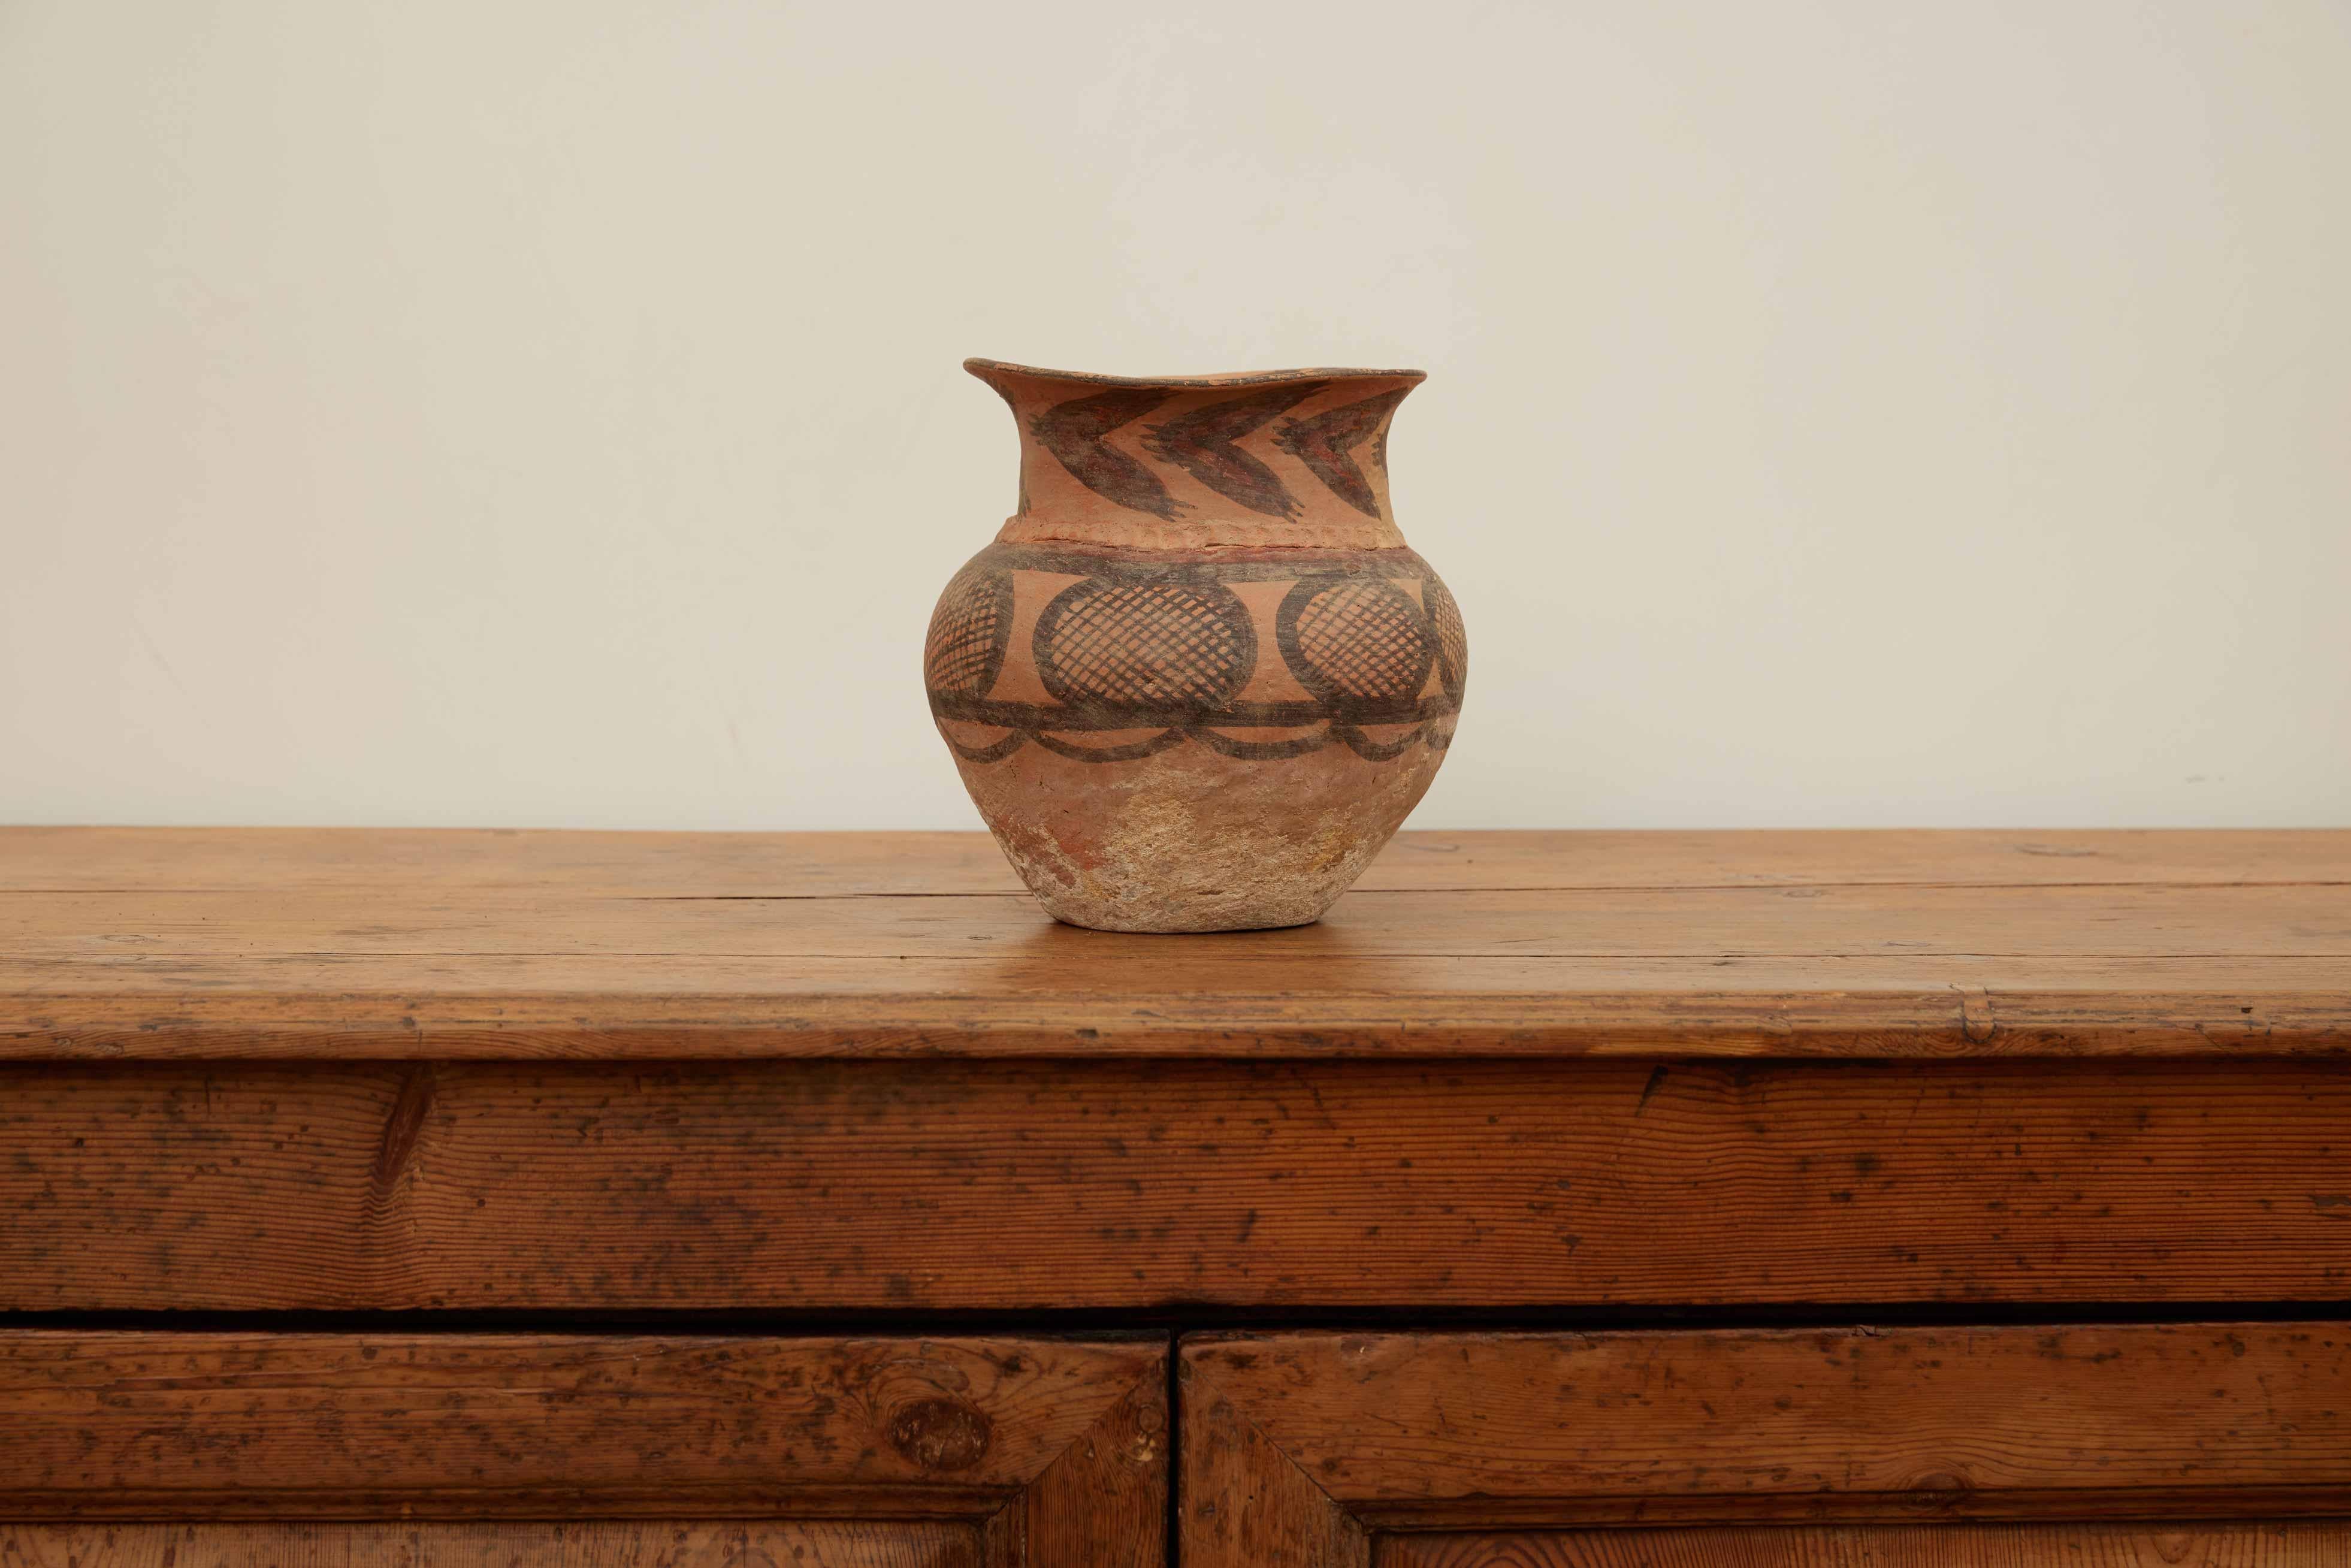 Vase chinois de la période néolithique

Poterie chinoise, objets faits d'argile et durcis à la chaleur : faïence, grès et porcelaine, en particulier ceux fabriqués en Chine. Nulle part ailleurs dans le monde la poterie n'a pris autant d'importance